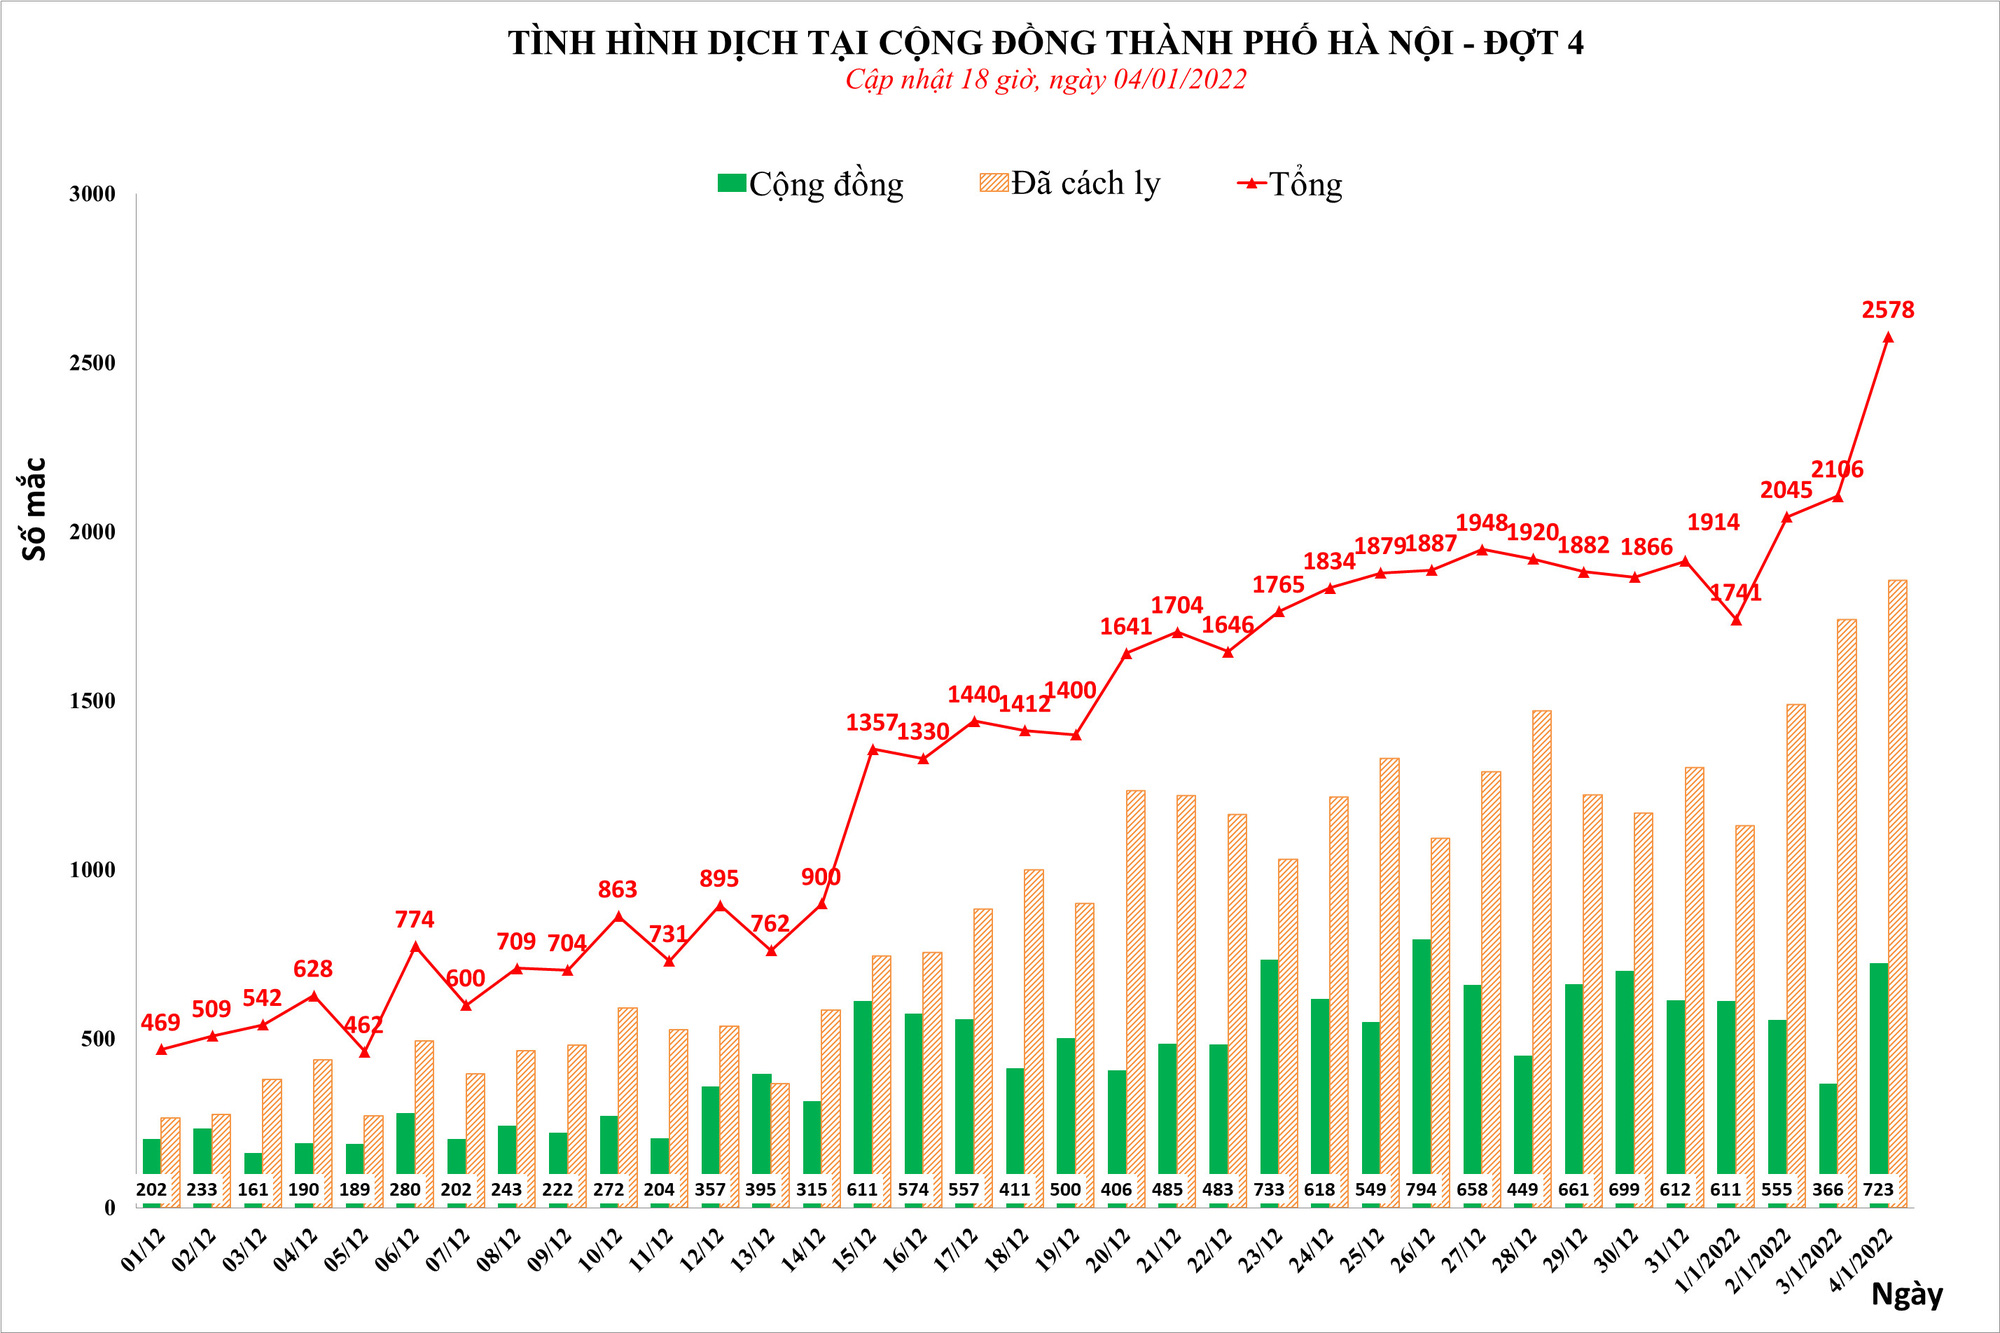 Ca nhiễm Covid-19 tại Hà Nội tăng mạnh, ghi nhận hơn 2.500 ca trong ngày - Ảnh 1.